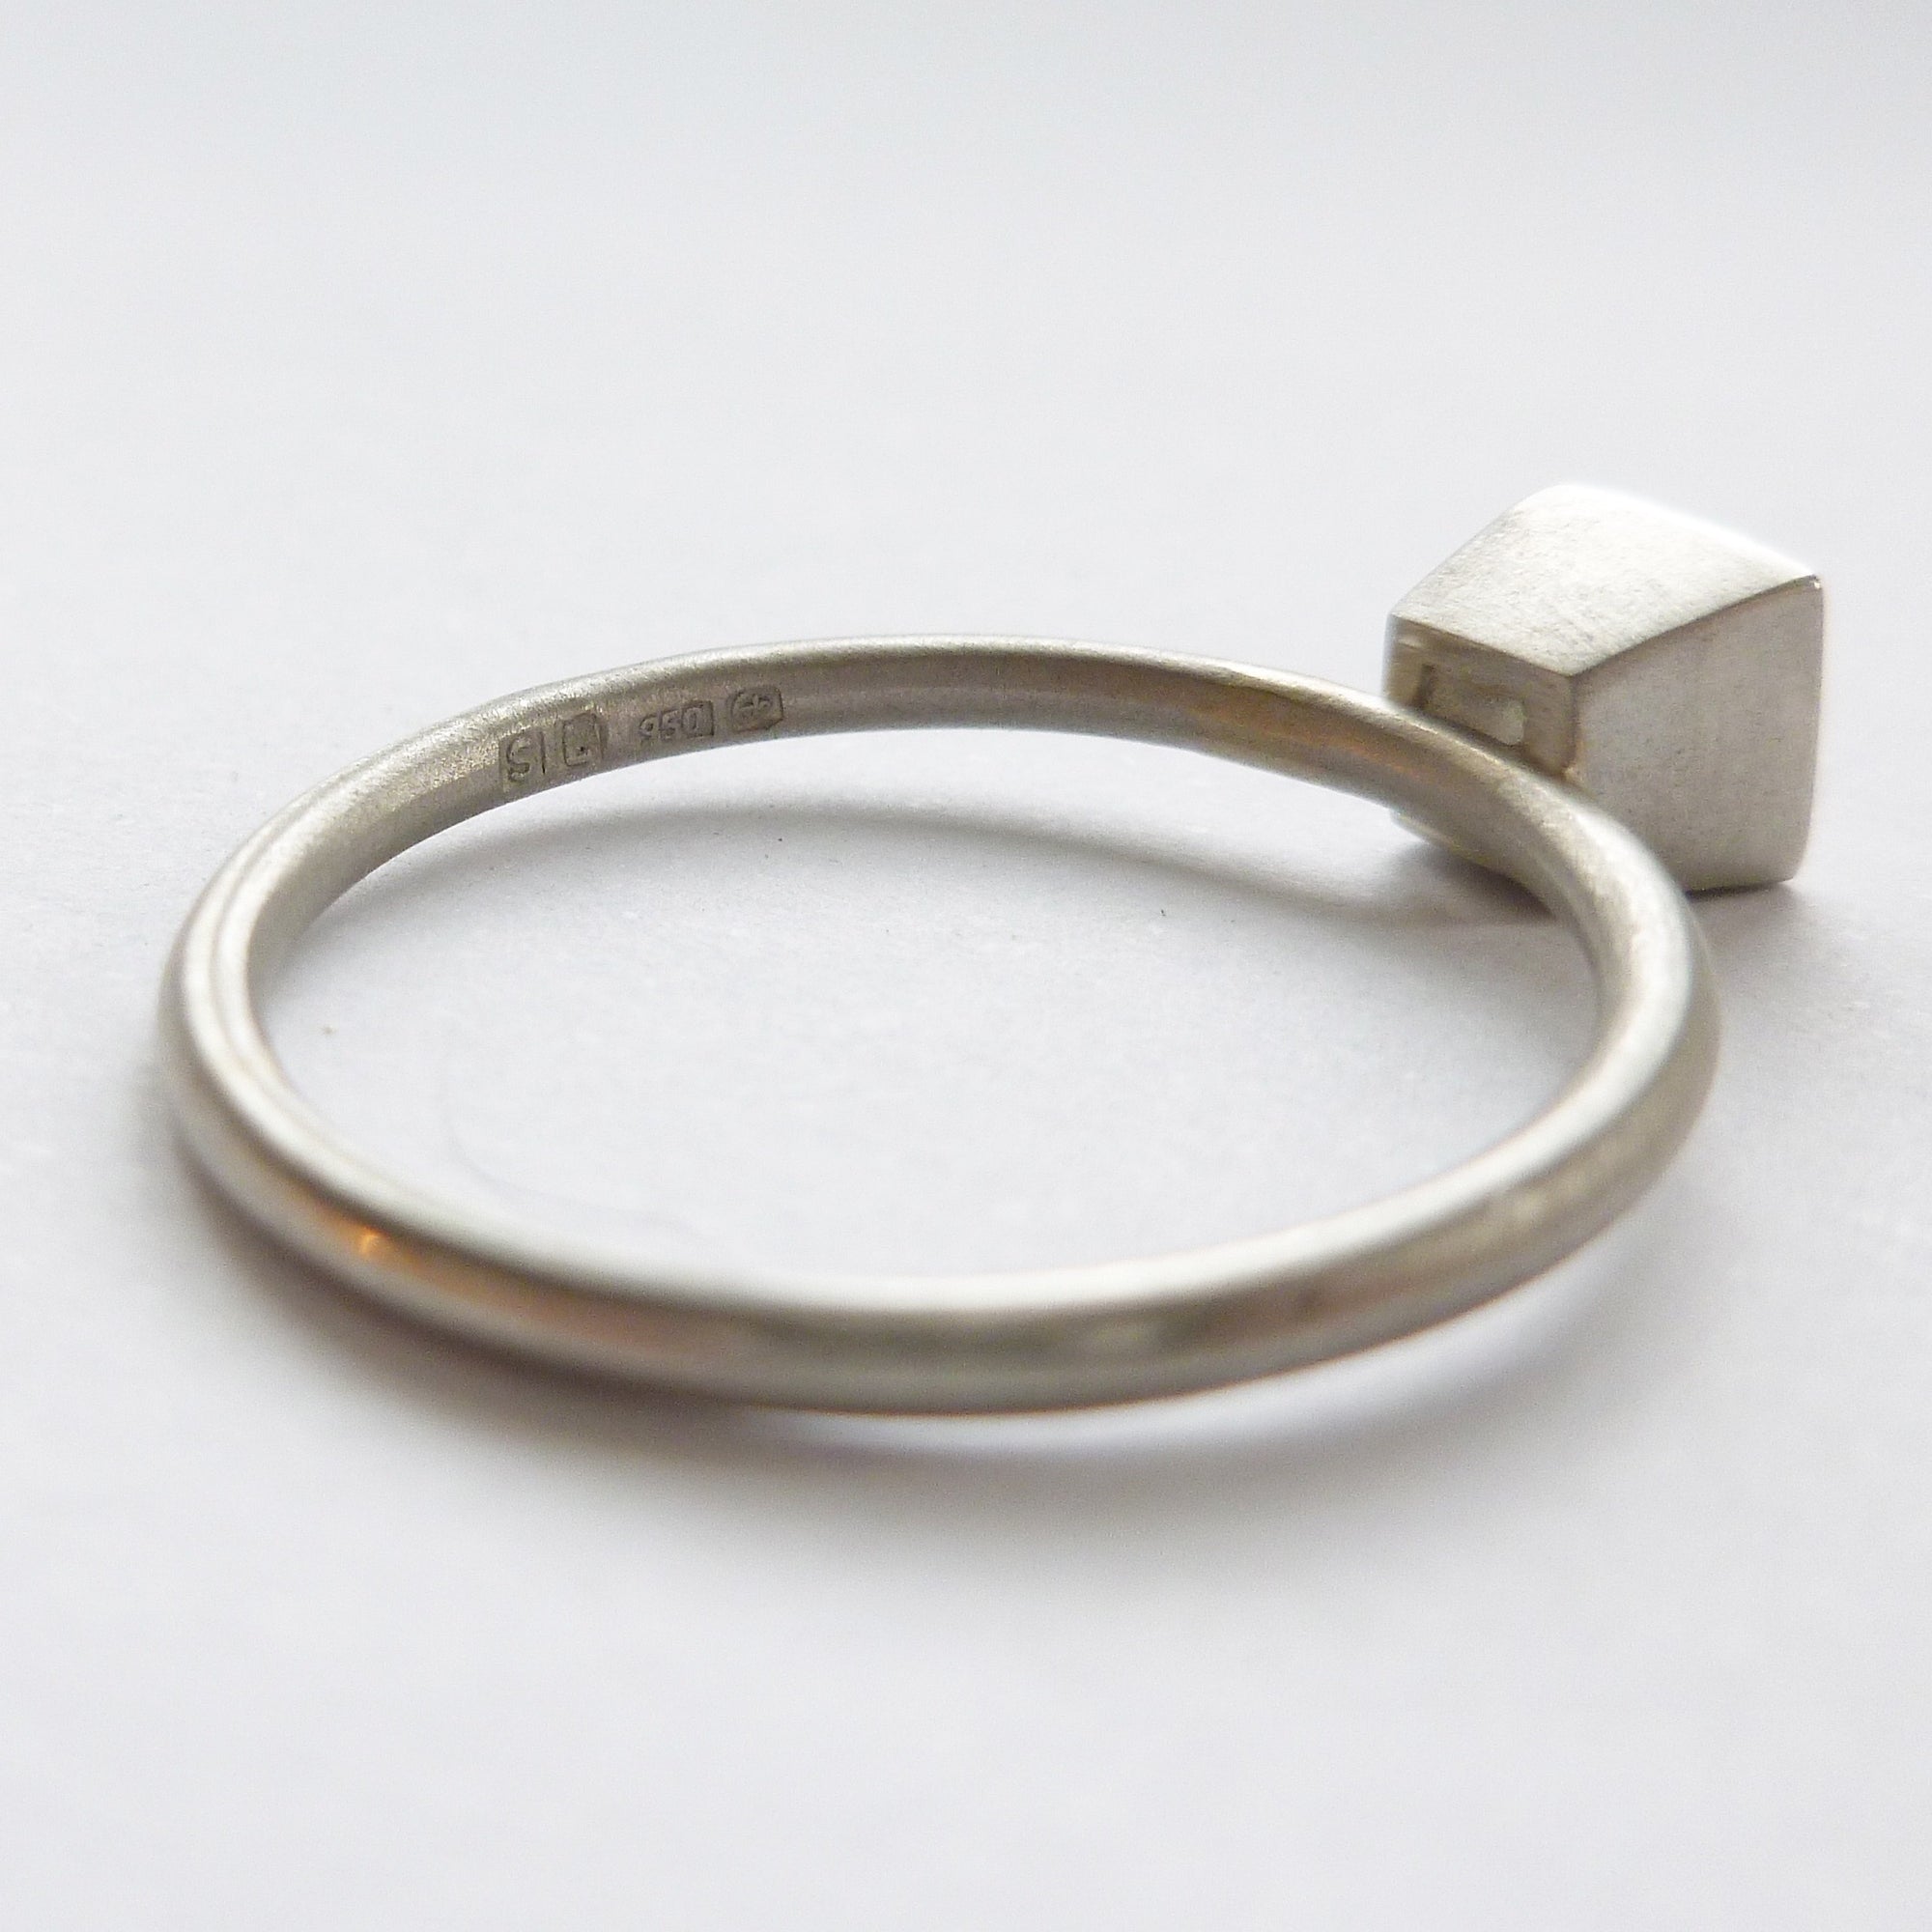 Platinum and square diamond engagement ring